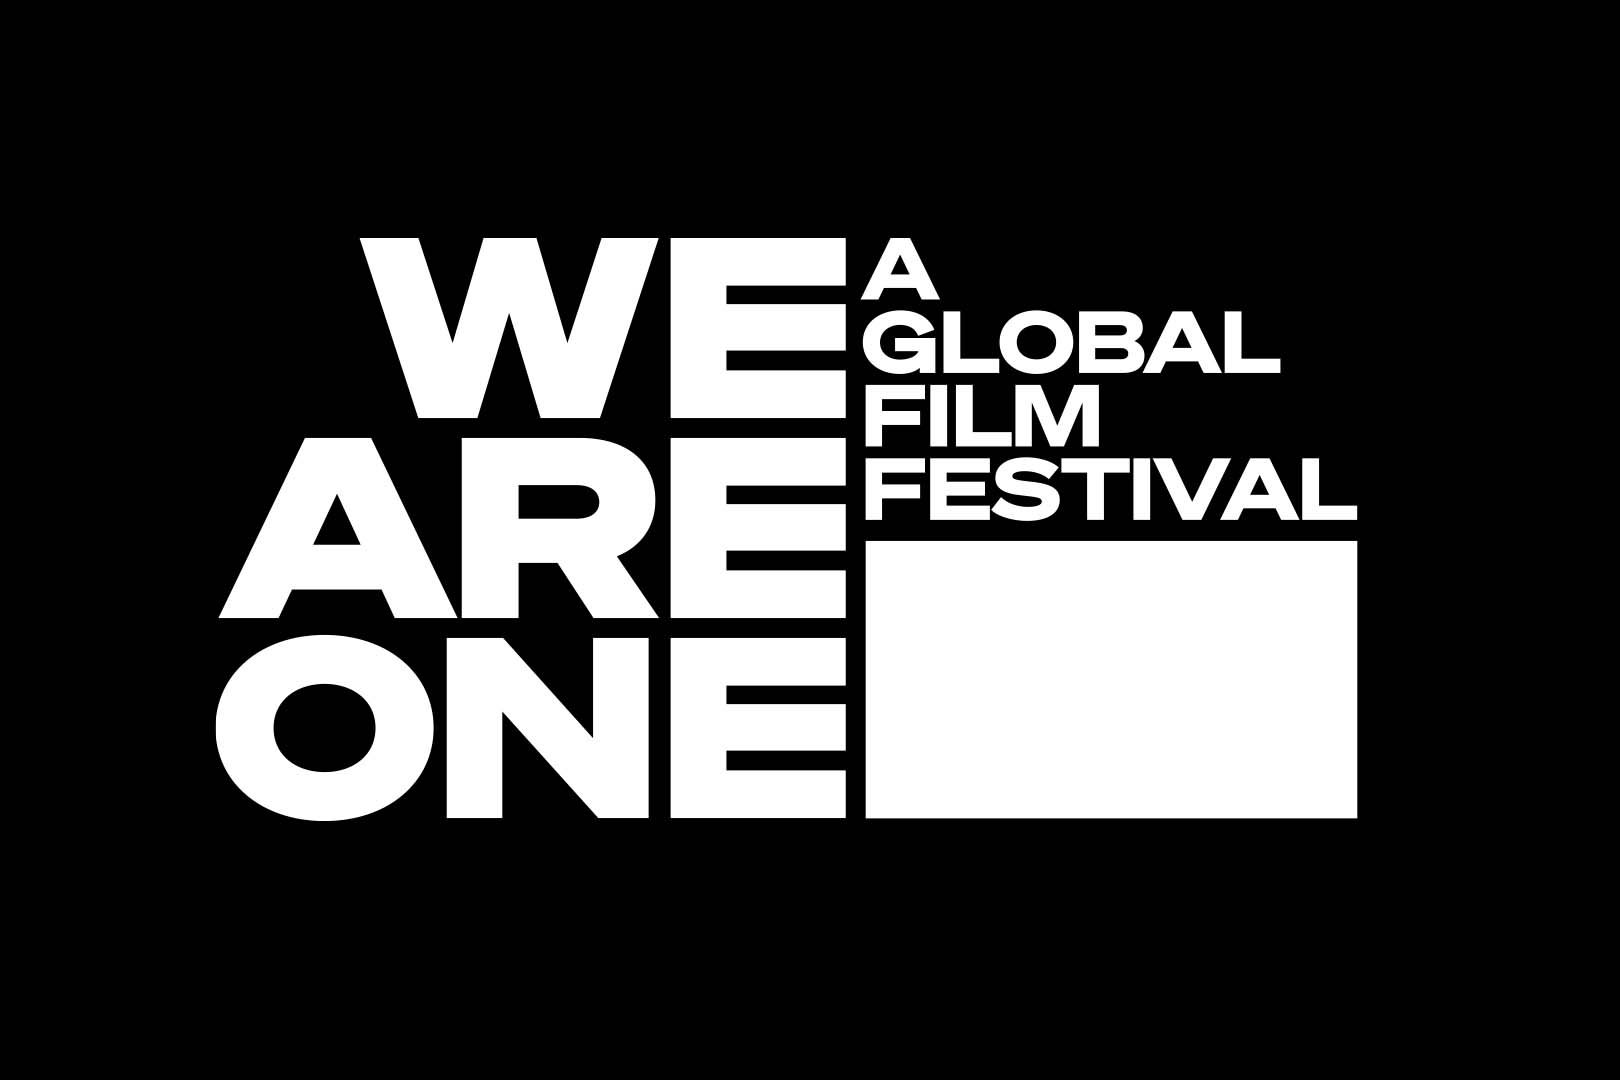 Les festivals de Cannes, Sundance et Berlin s'invitent sur Youtube